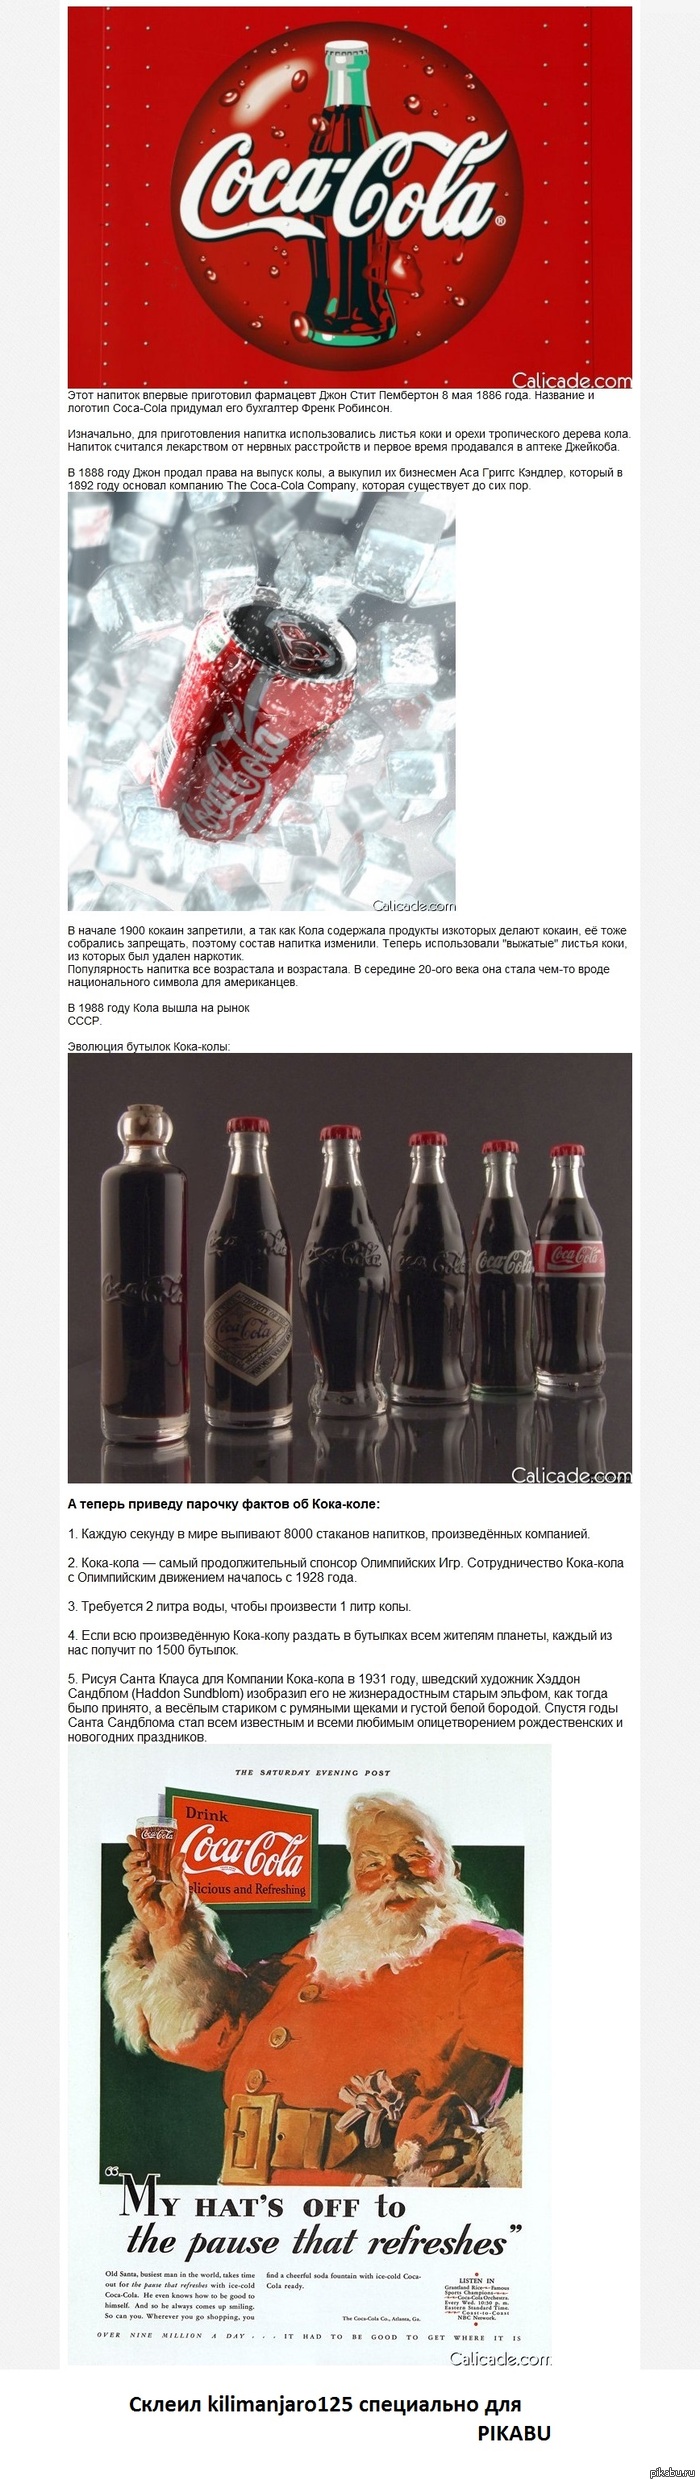    Coca-cola  : http://calicade.com/post/62